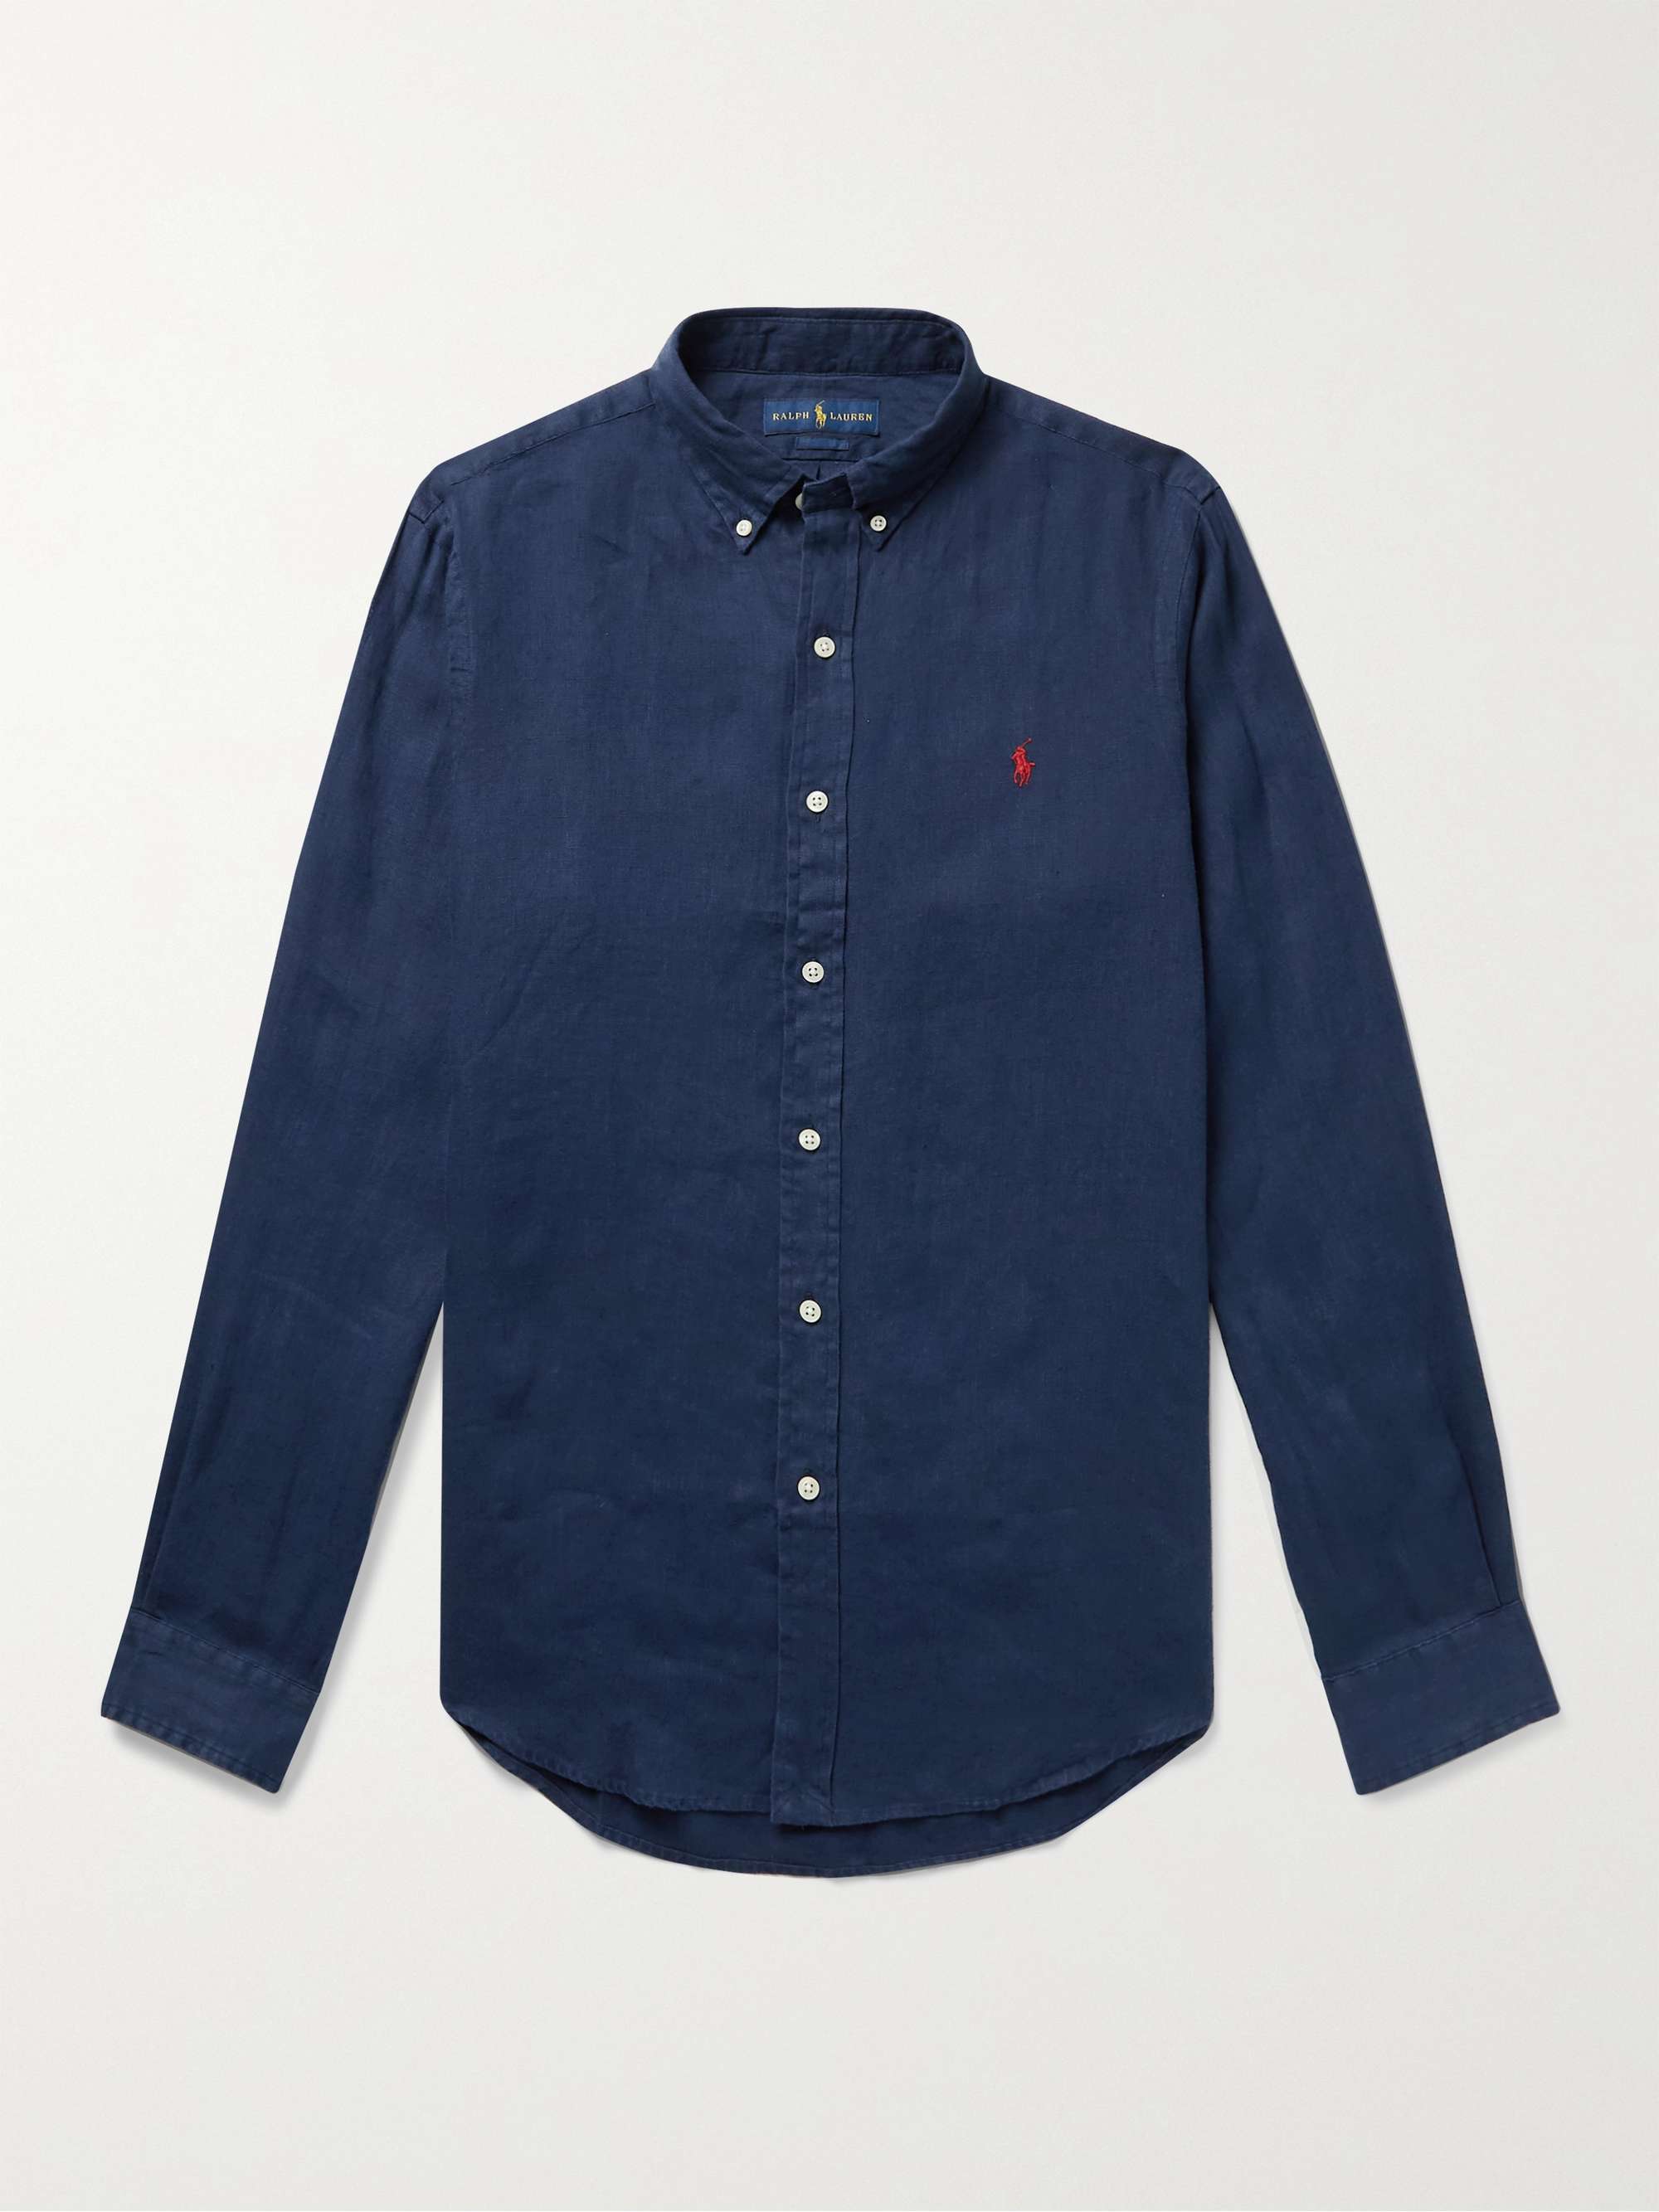 Navy Slim-Fit Button-Down Collar Linen Shirt | POLO RALPH LAUREN | MR PORTER